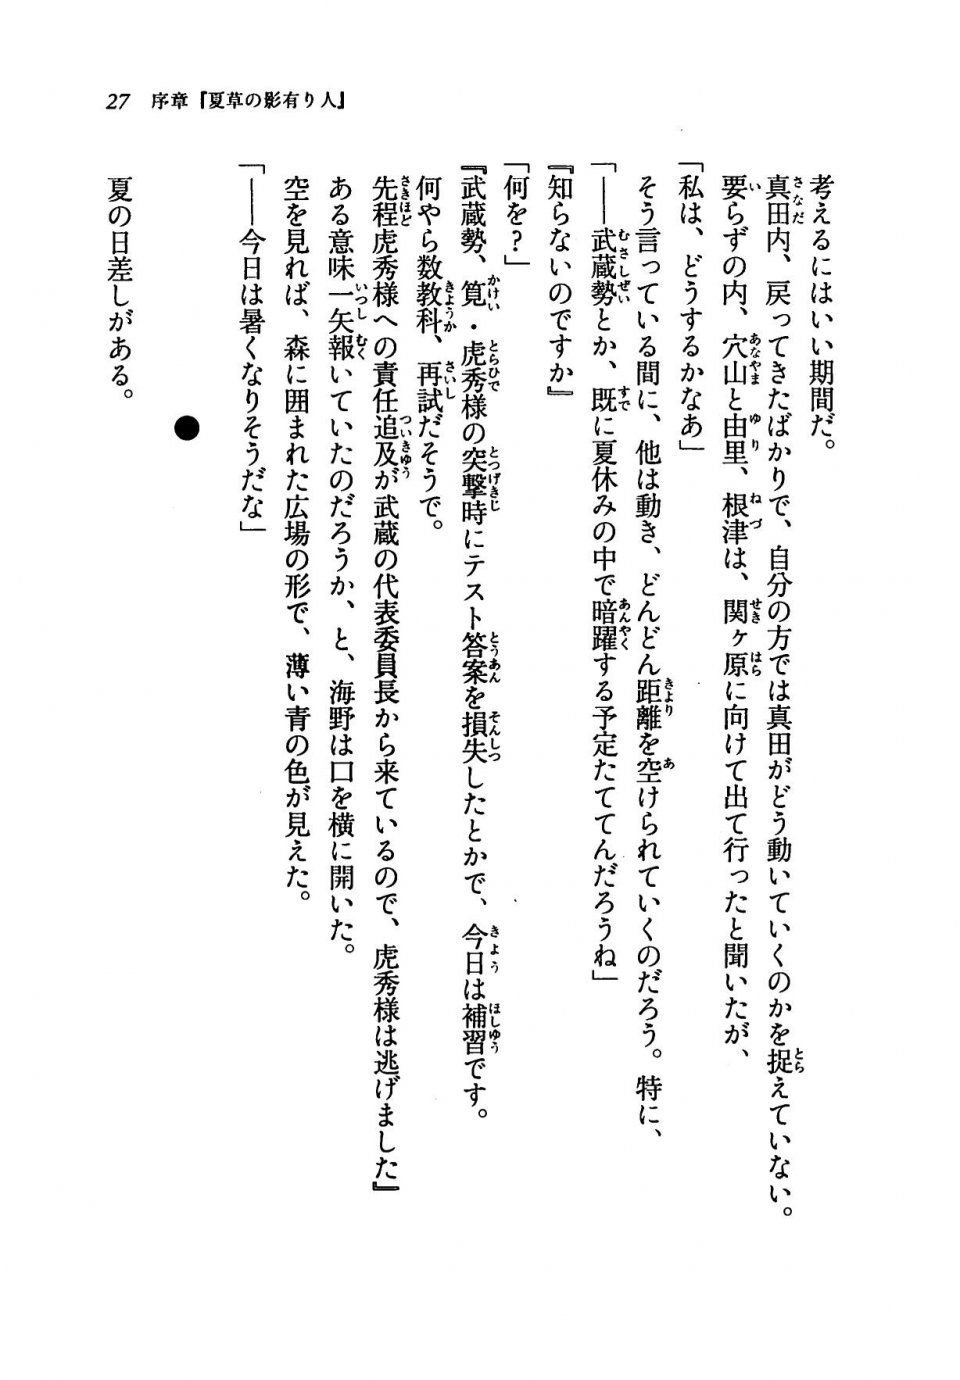 Kyoukai Senjou no Horizon LN Vol 19(8A) - Photo #27